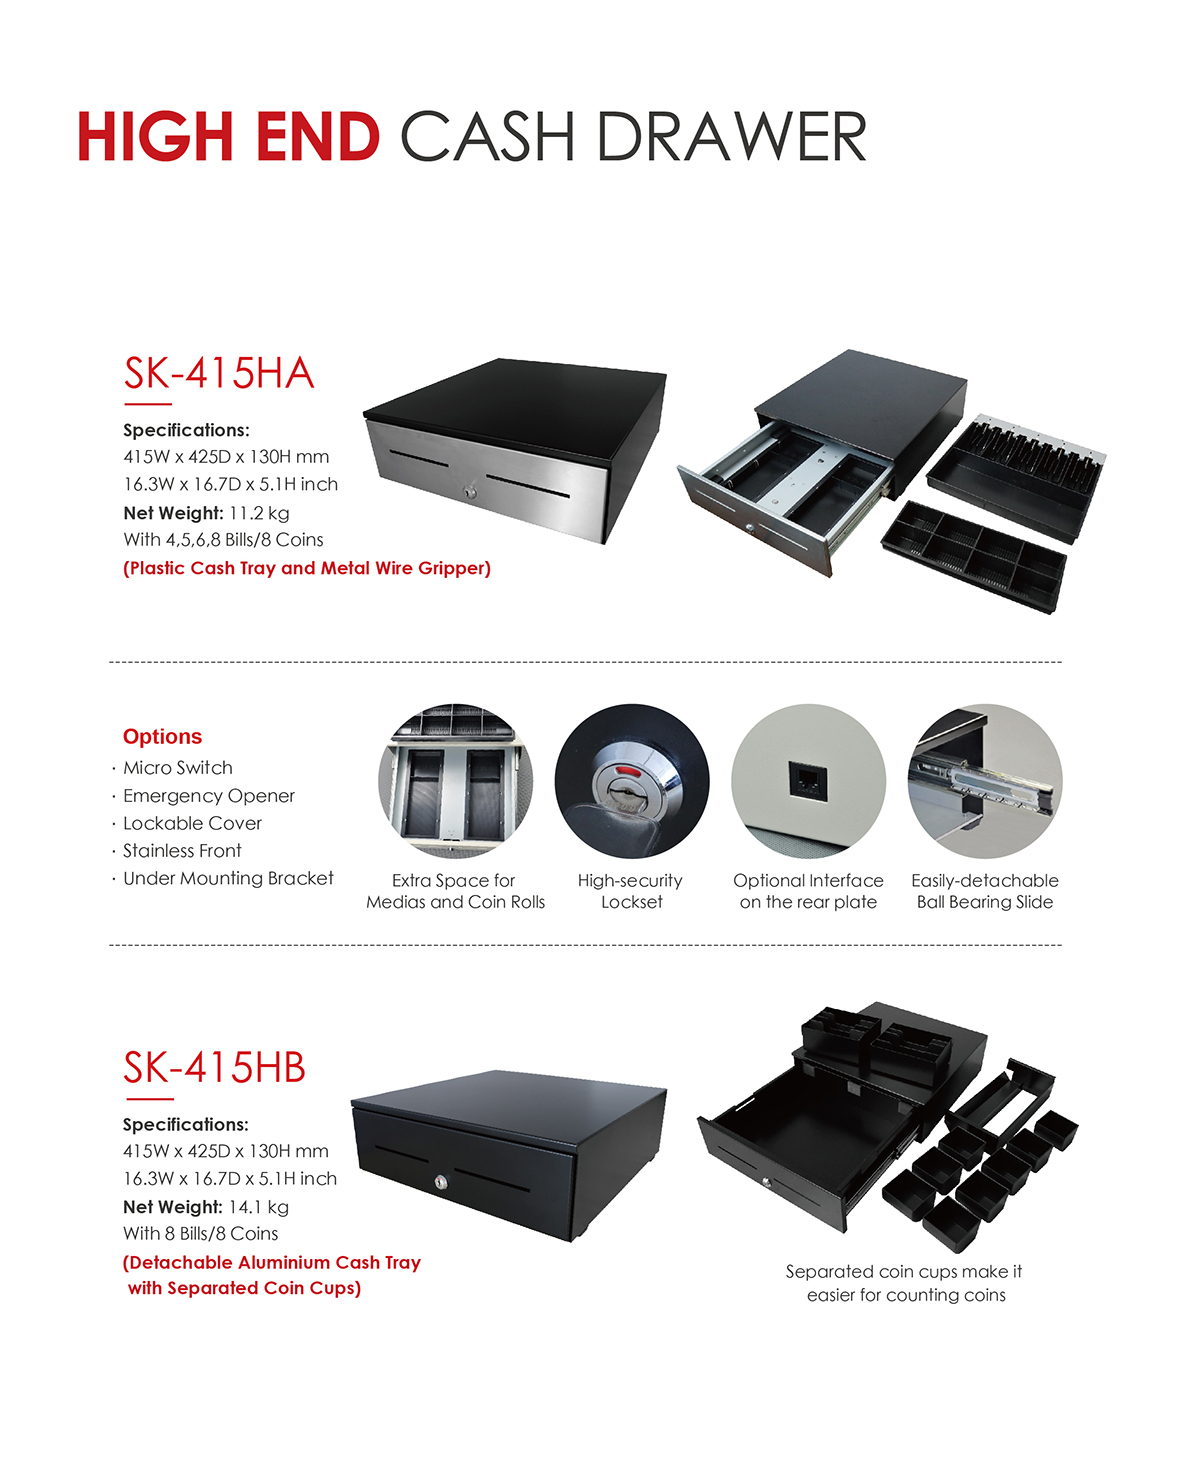 Ball bearing slide cash drawer sk415hb